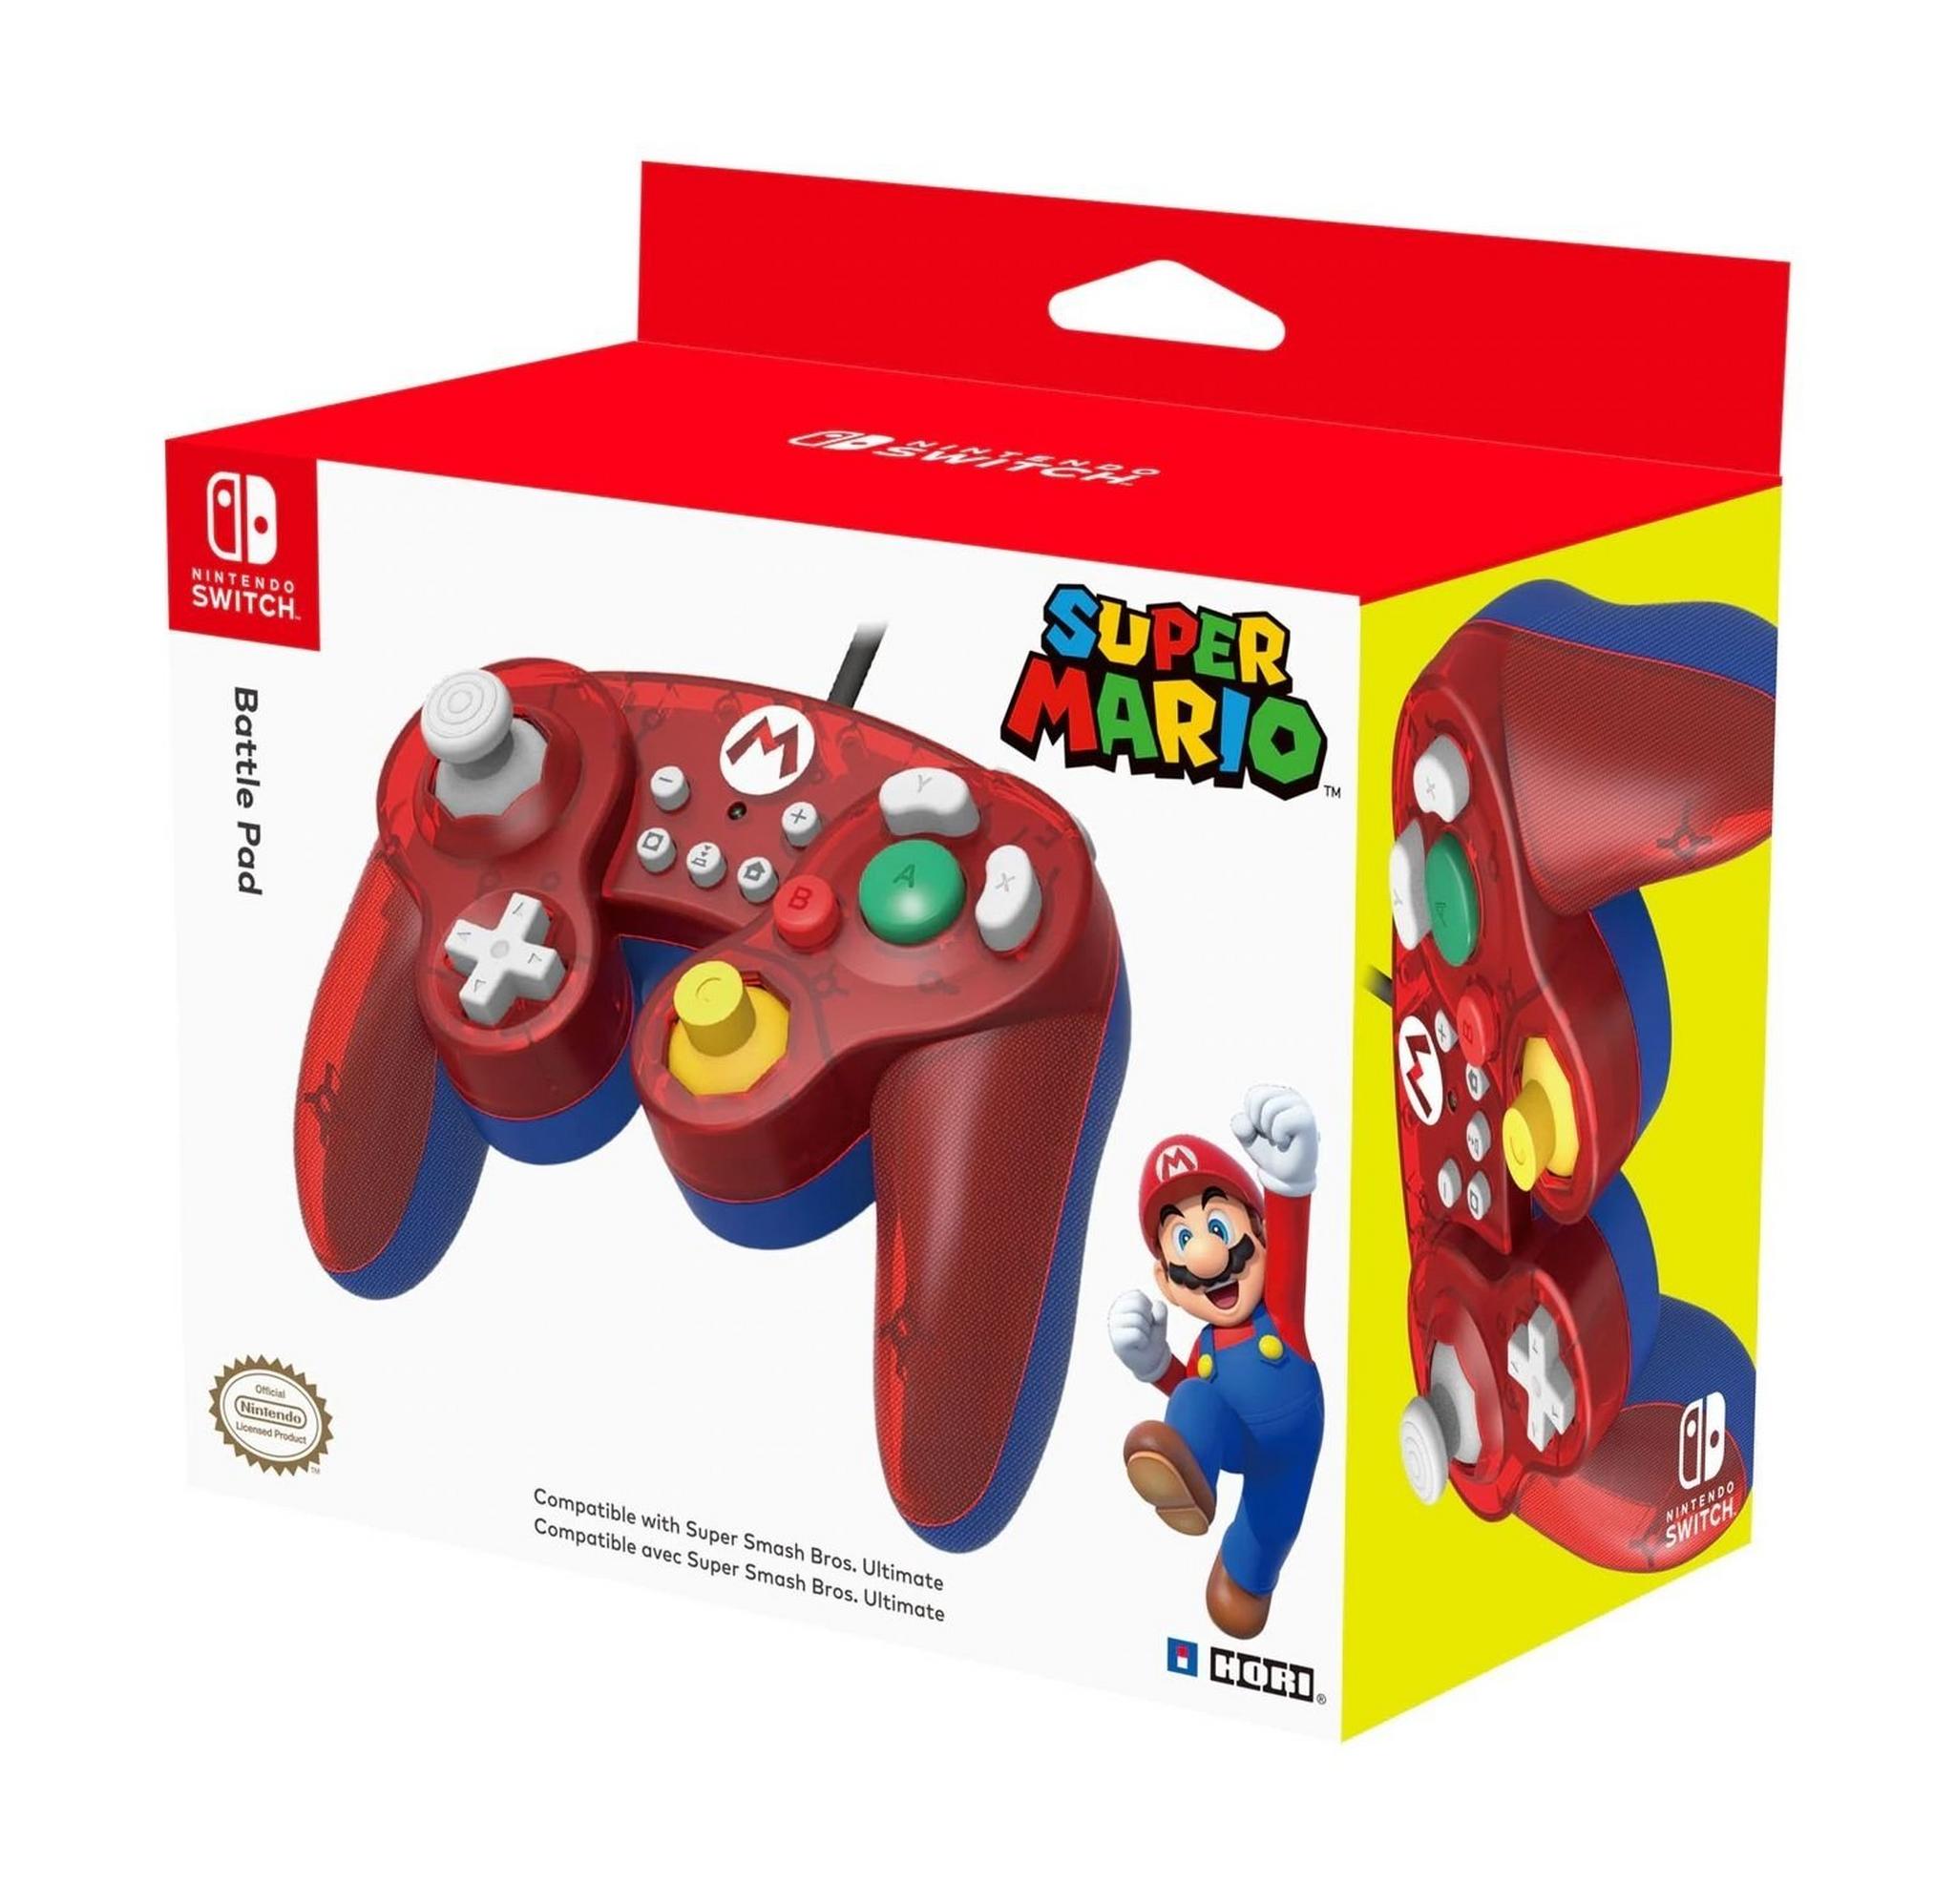 Hori Nintendo Switch: Super Smash Bros GamePad - Mario